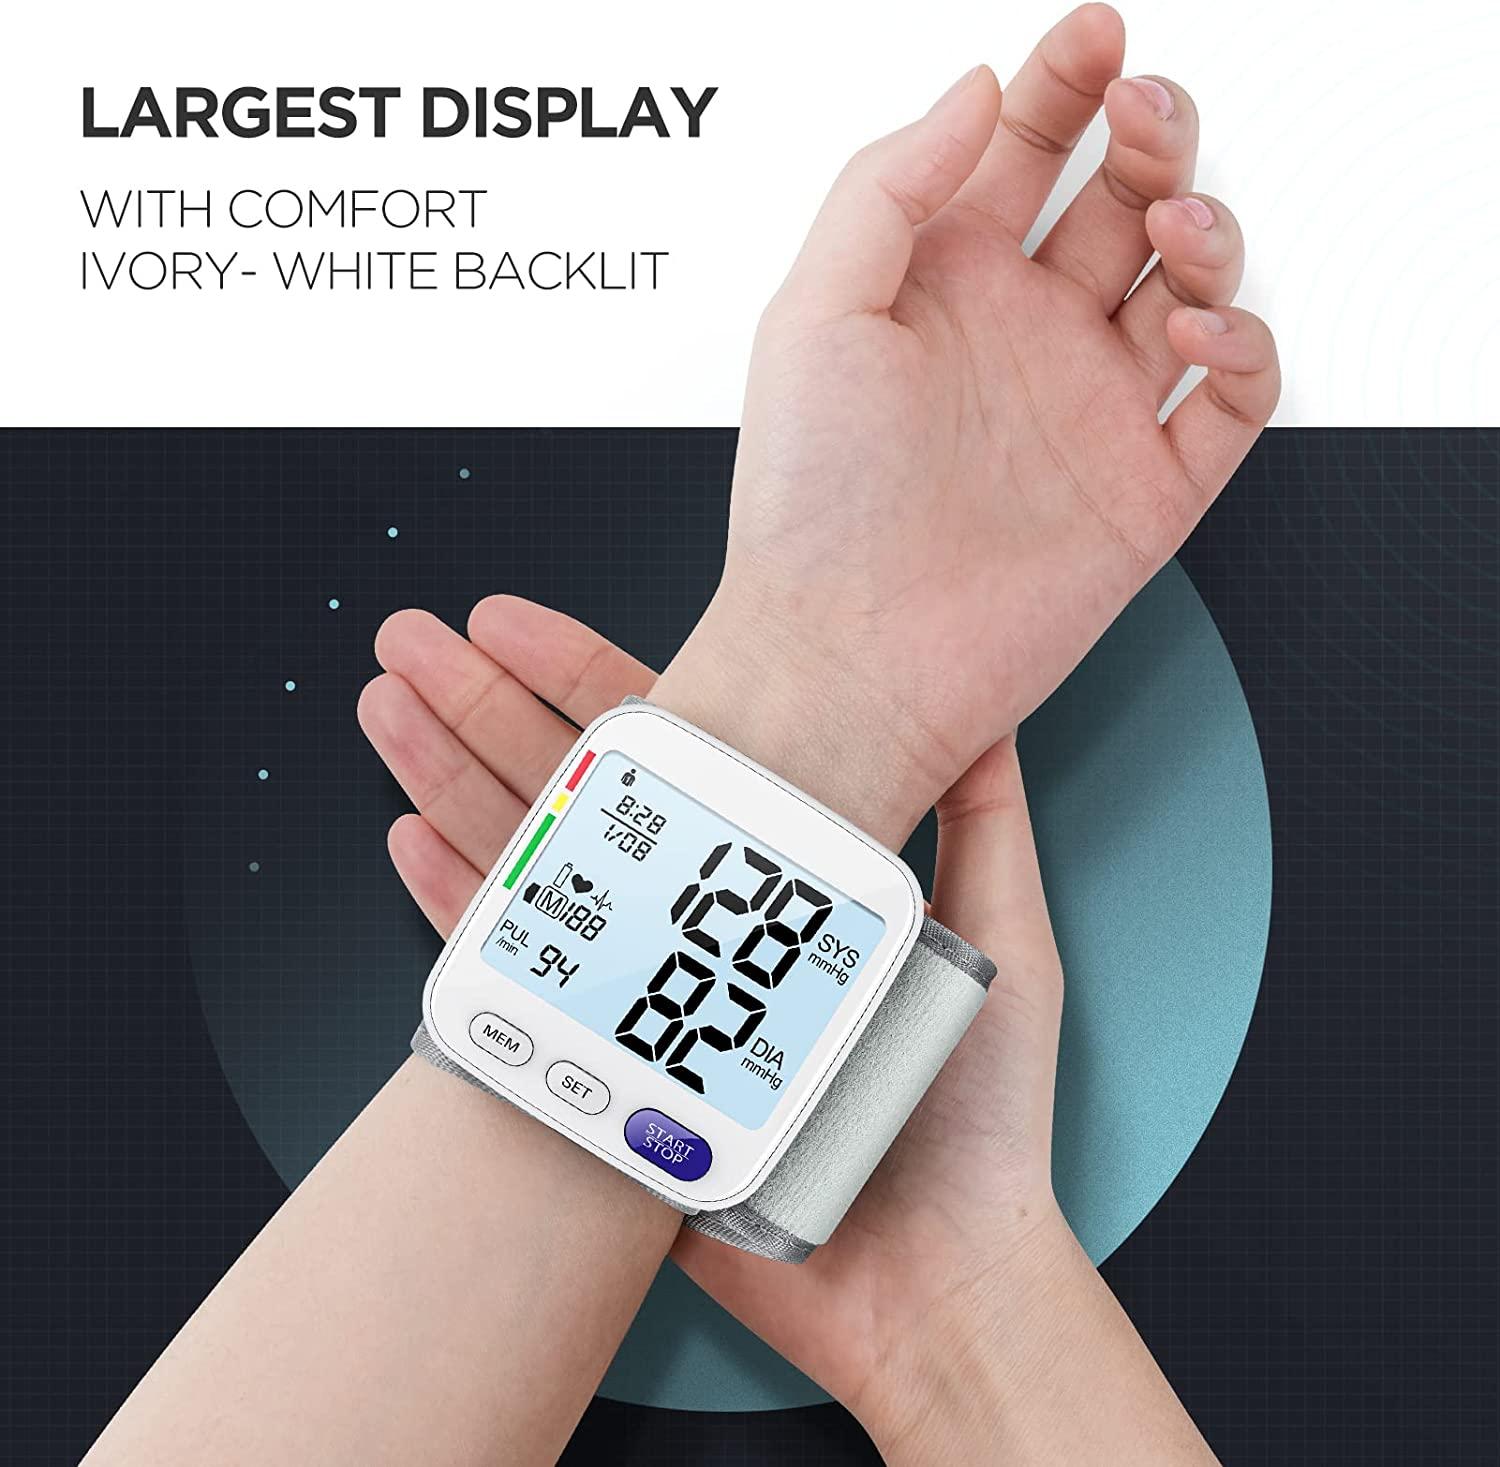 Blood Pressure Monitor Wrist Cuff - Accurate Automatic Digital BP